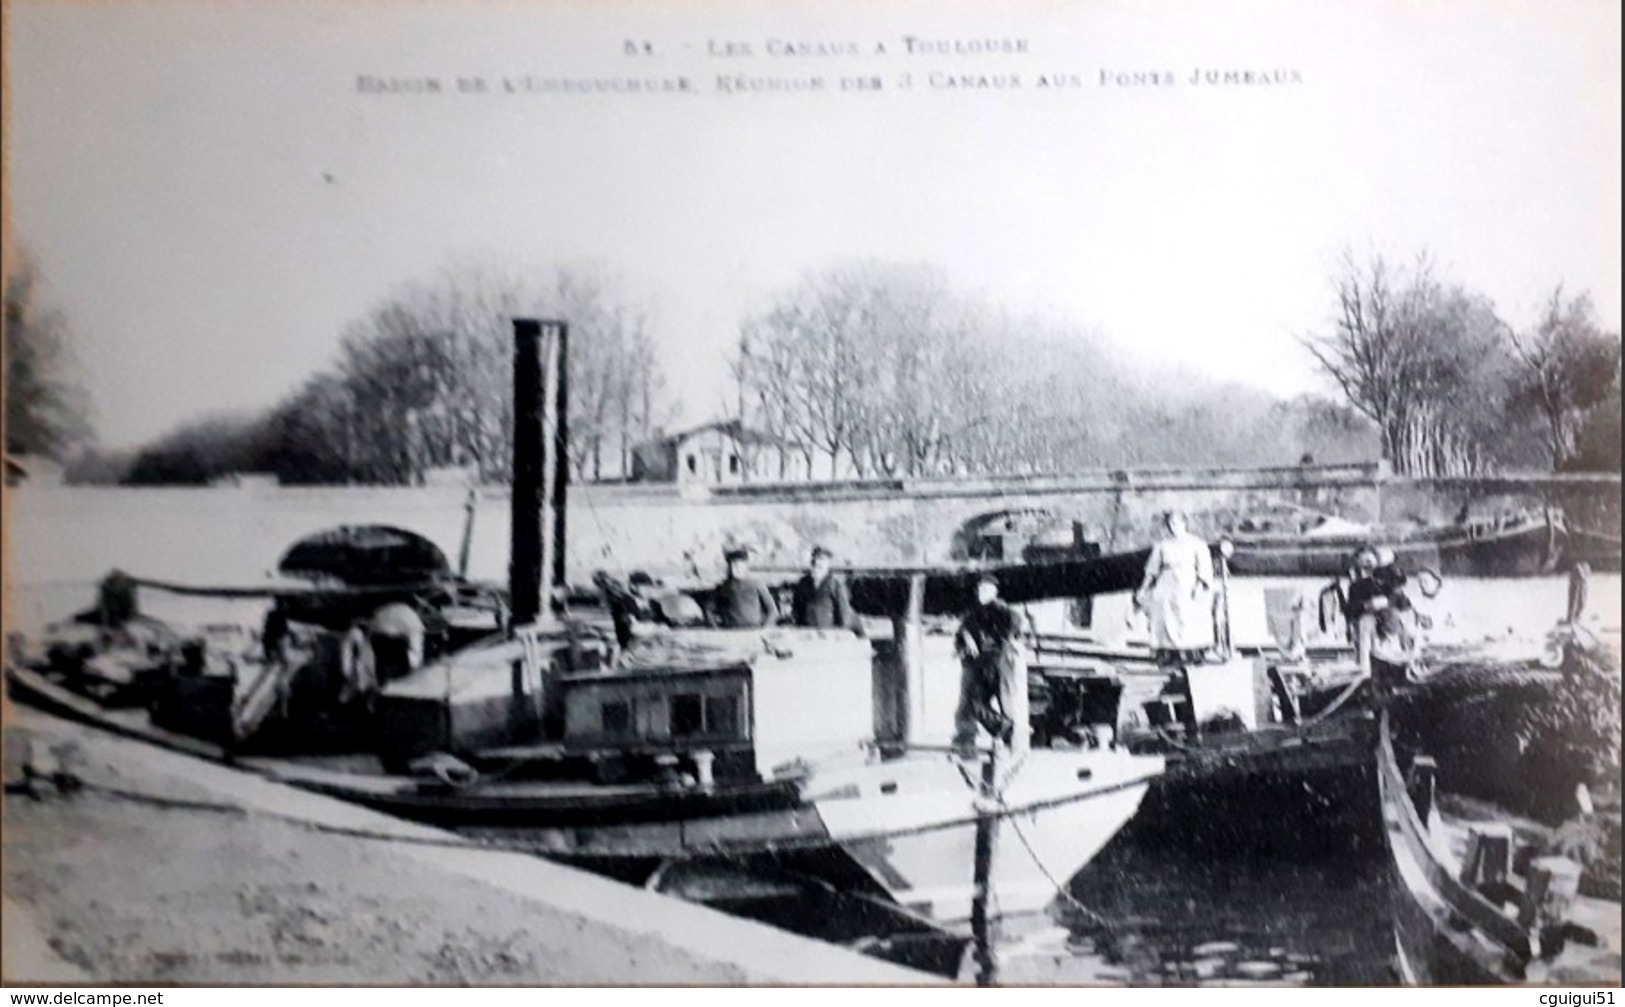 Les Canaux à Toulouse Bassin De L'embouchure Réunion Des 3 Canaux Aux Ponts Jumeaux - Toulouse